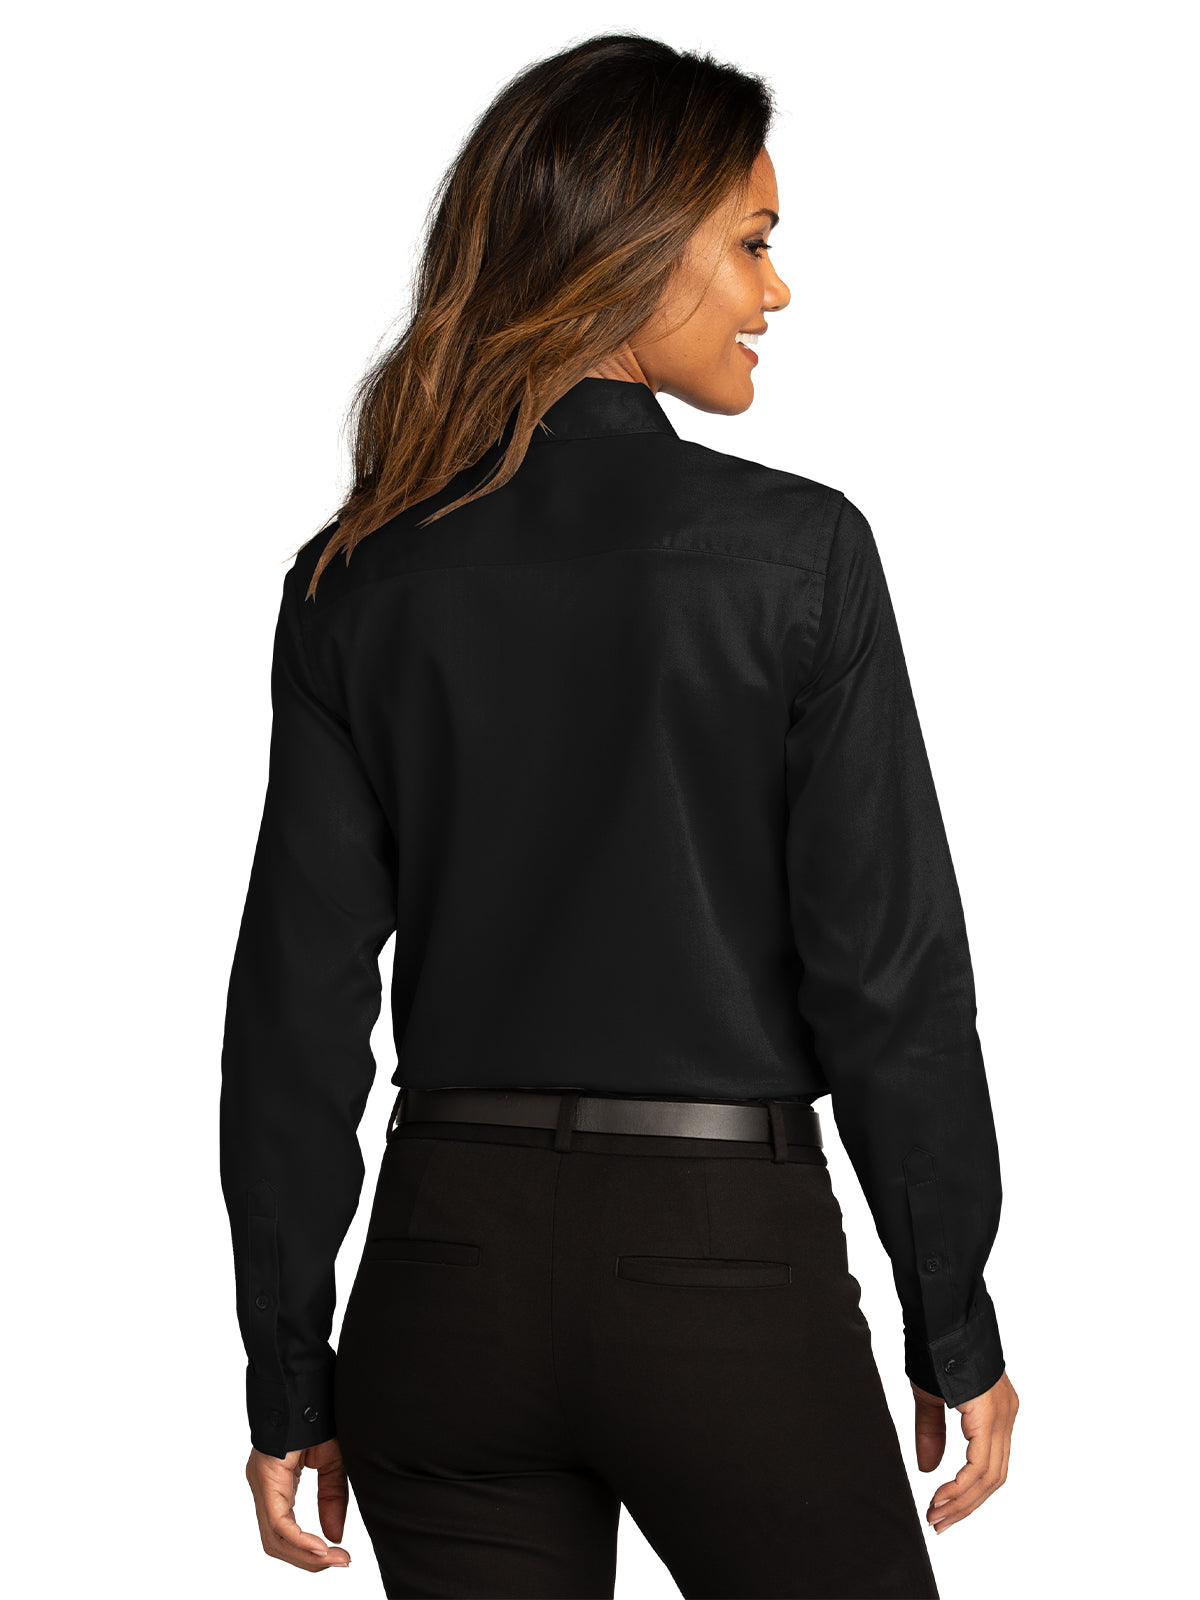 Women's Long Sleeve Shirt - LW808 - Deep Black